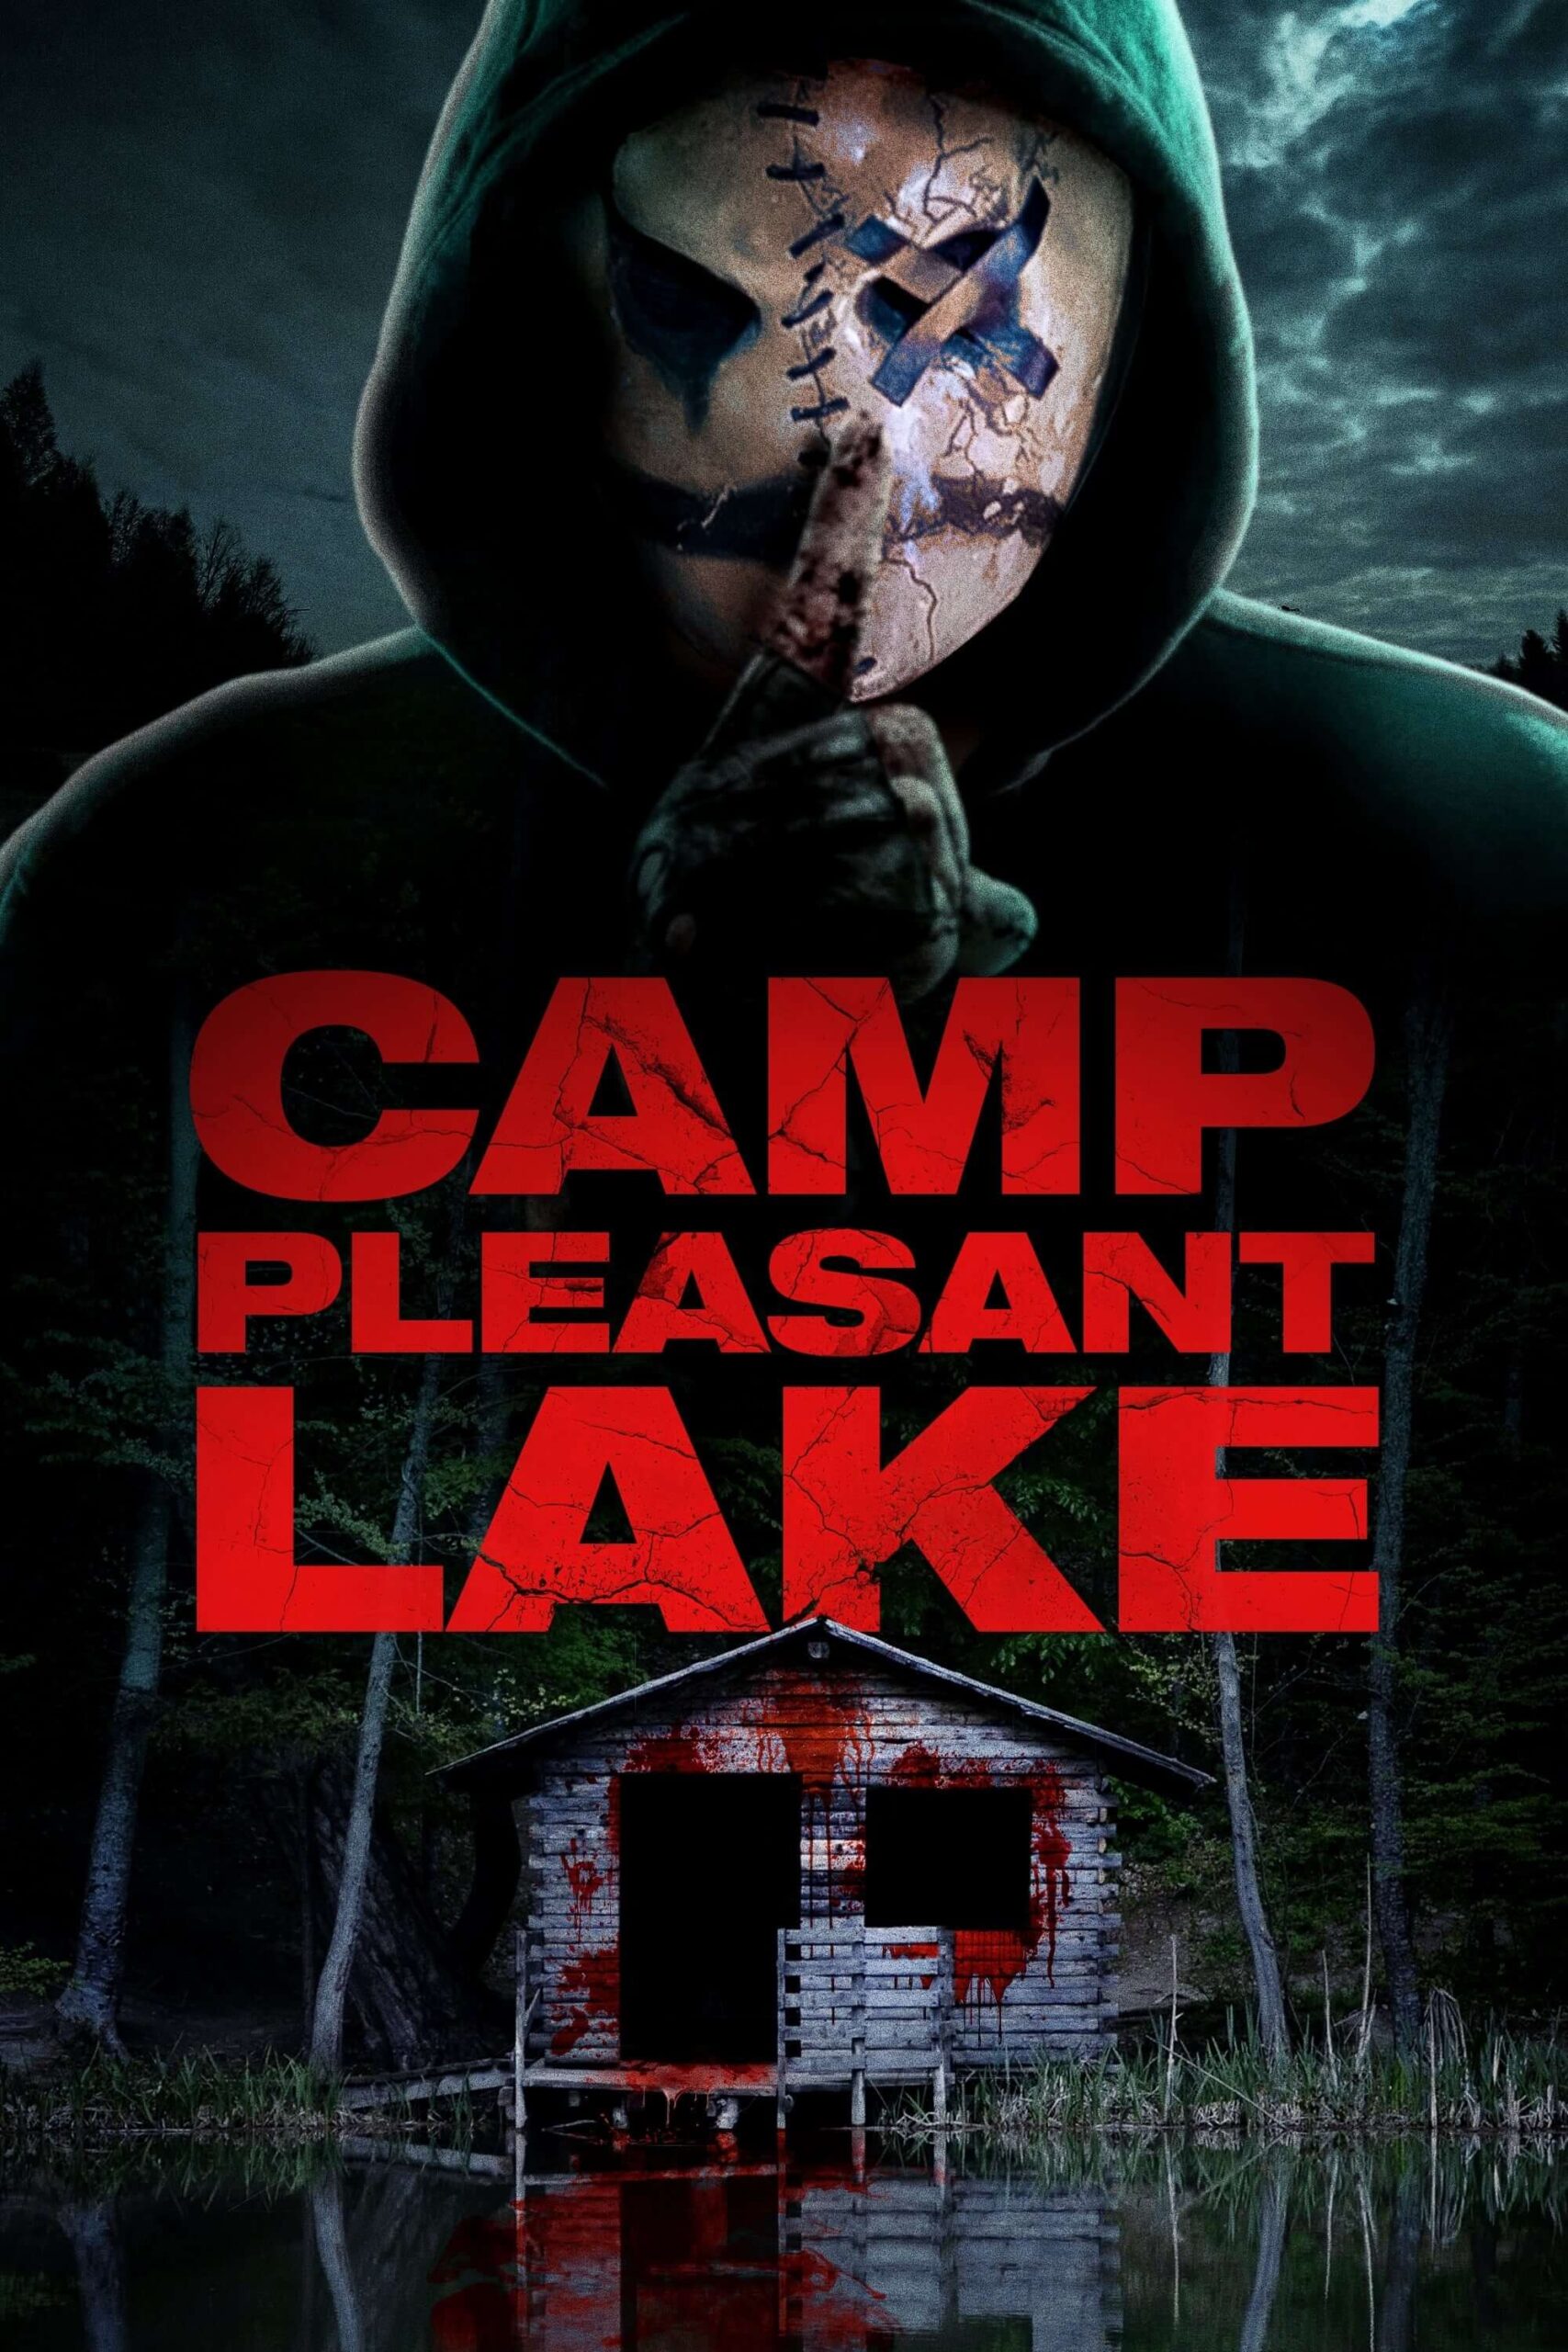 کمپ پلیزنت لیک (Camp Pleasant Lake)